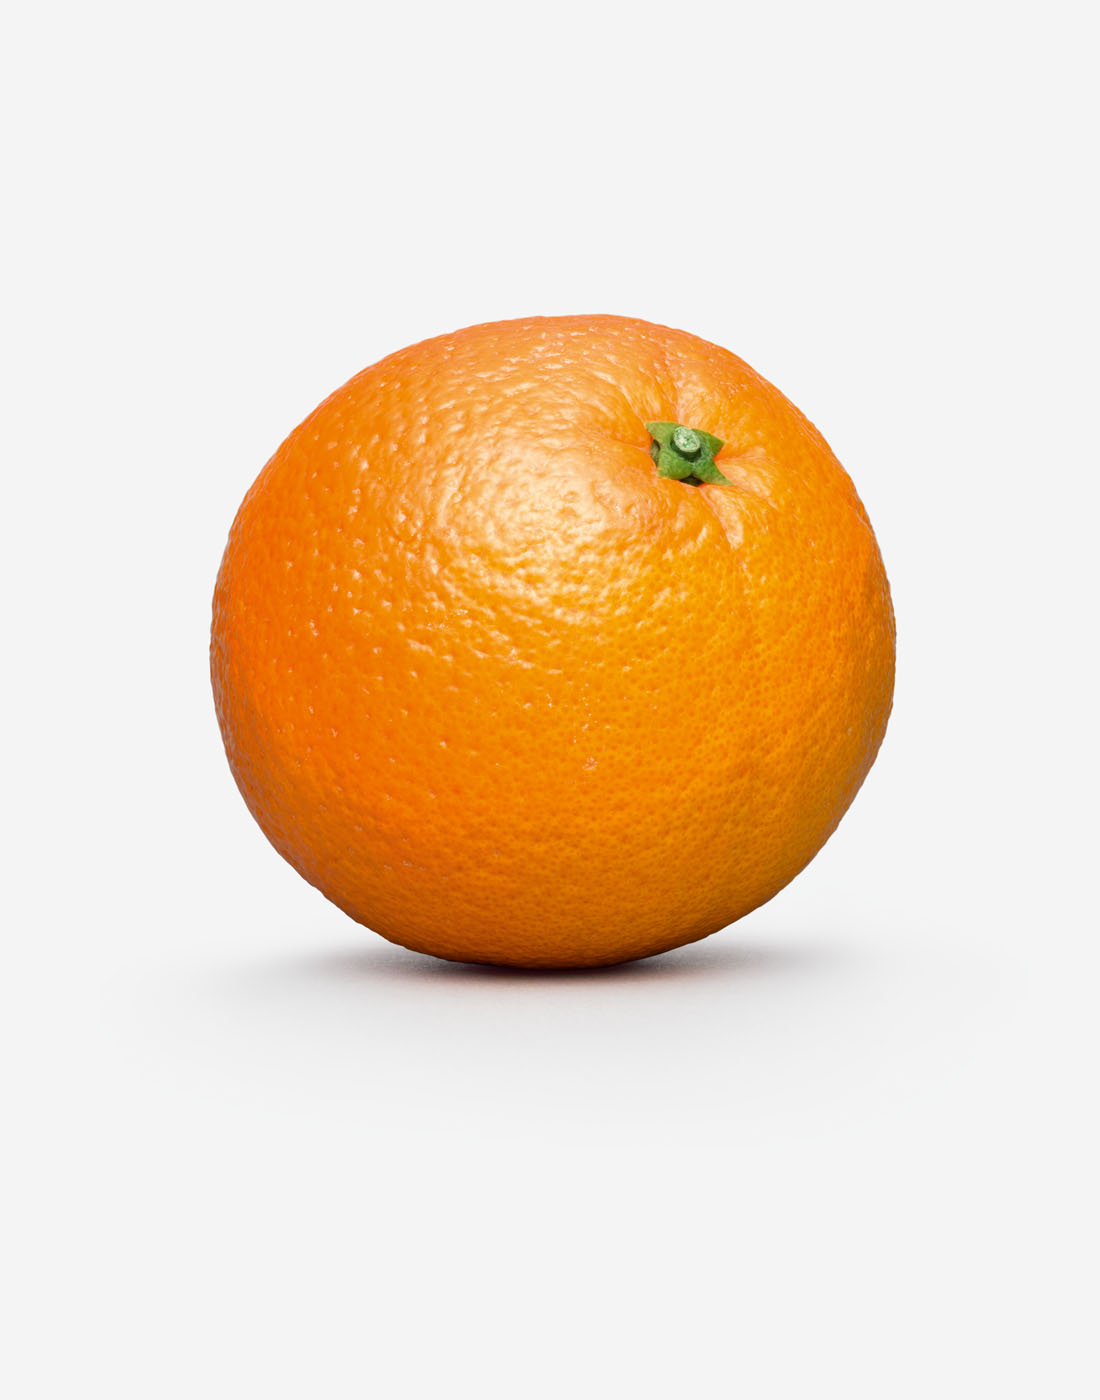 1417_Orange_Shad_R6_simp